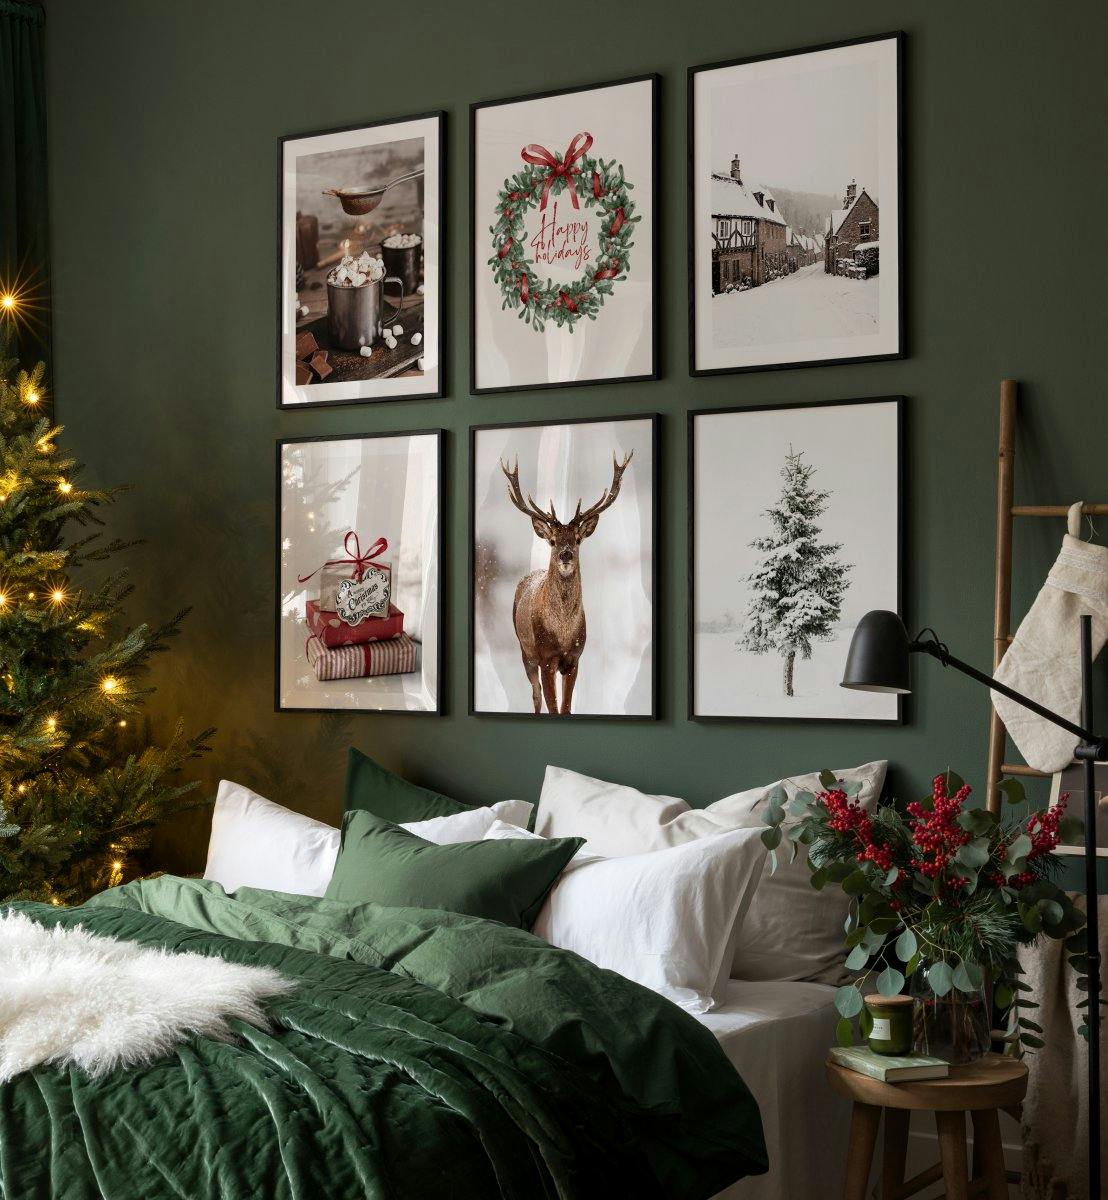 グリーン、レッド、ブラウンを基調としたクリスマスの写真やイラストを使ったポスターを、居心地の良いベッドルームに